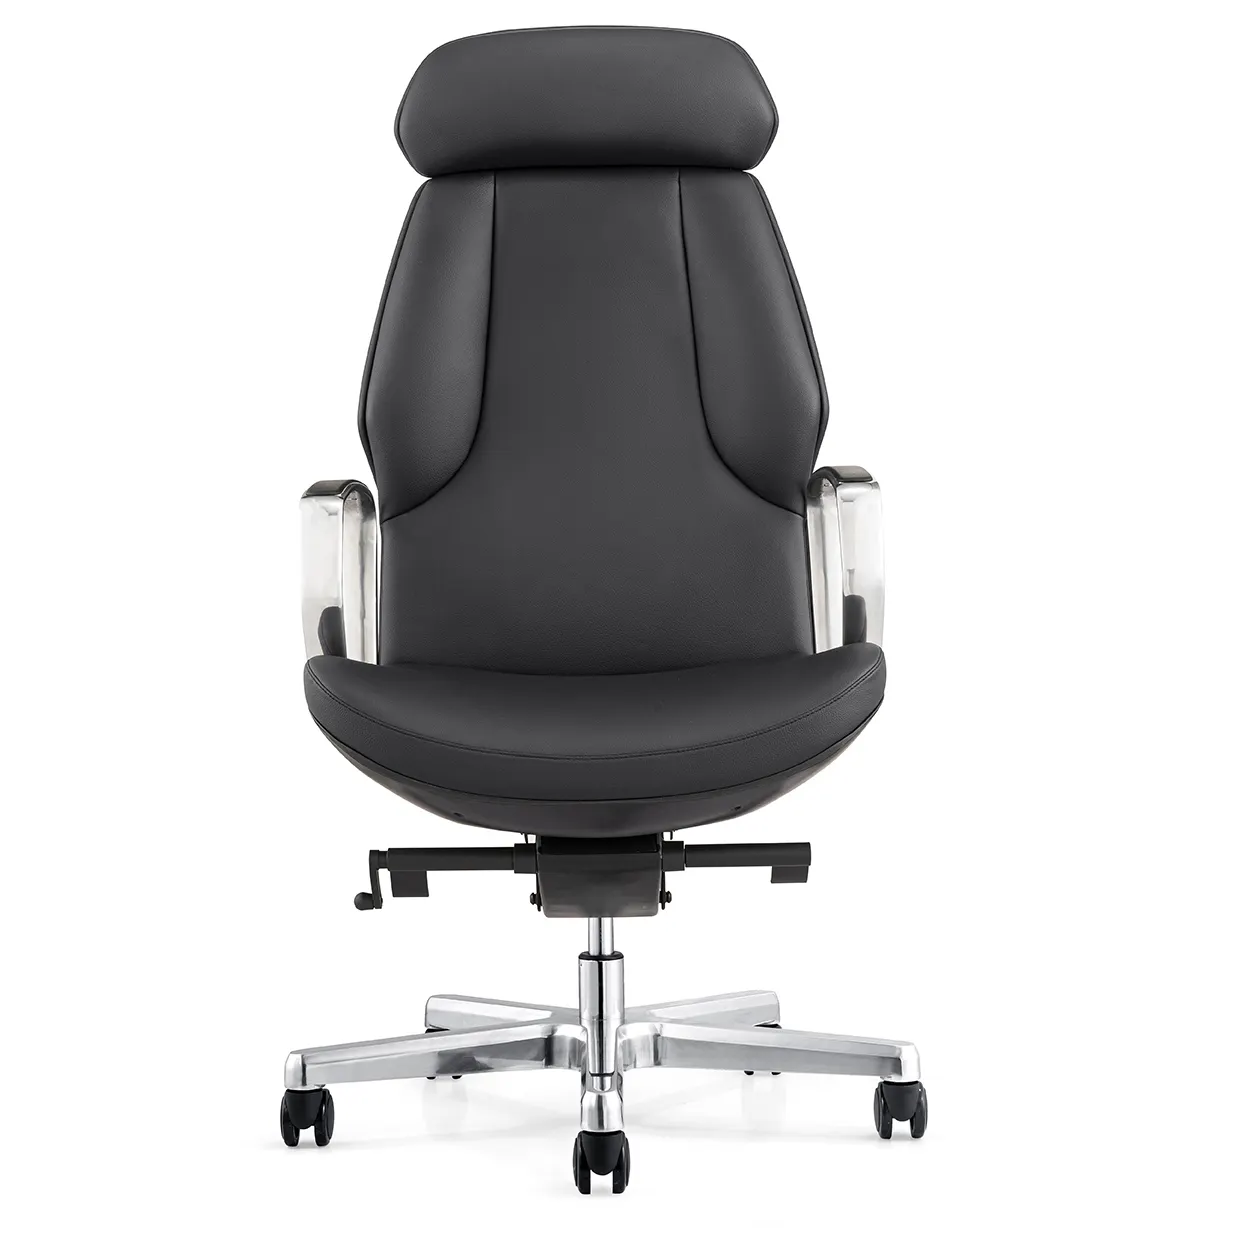 Sillas de director de cuero de nuevo diseño, sillas giratorias ejecutivas con respaldo alto, sillas de oficina Ceo Boss de cuero Pu negro